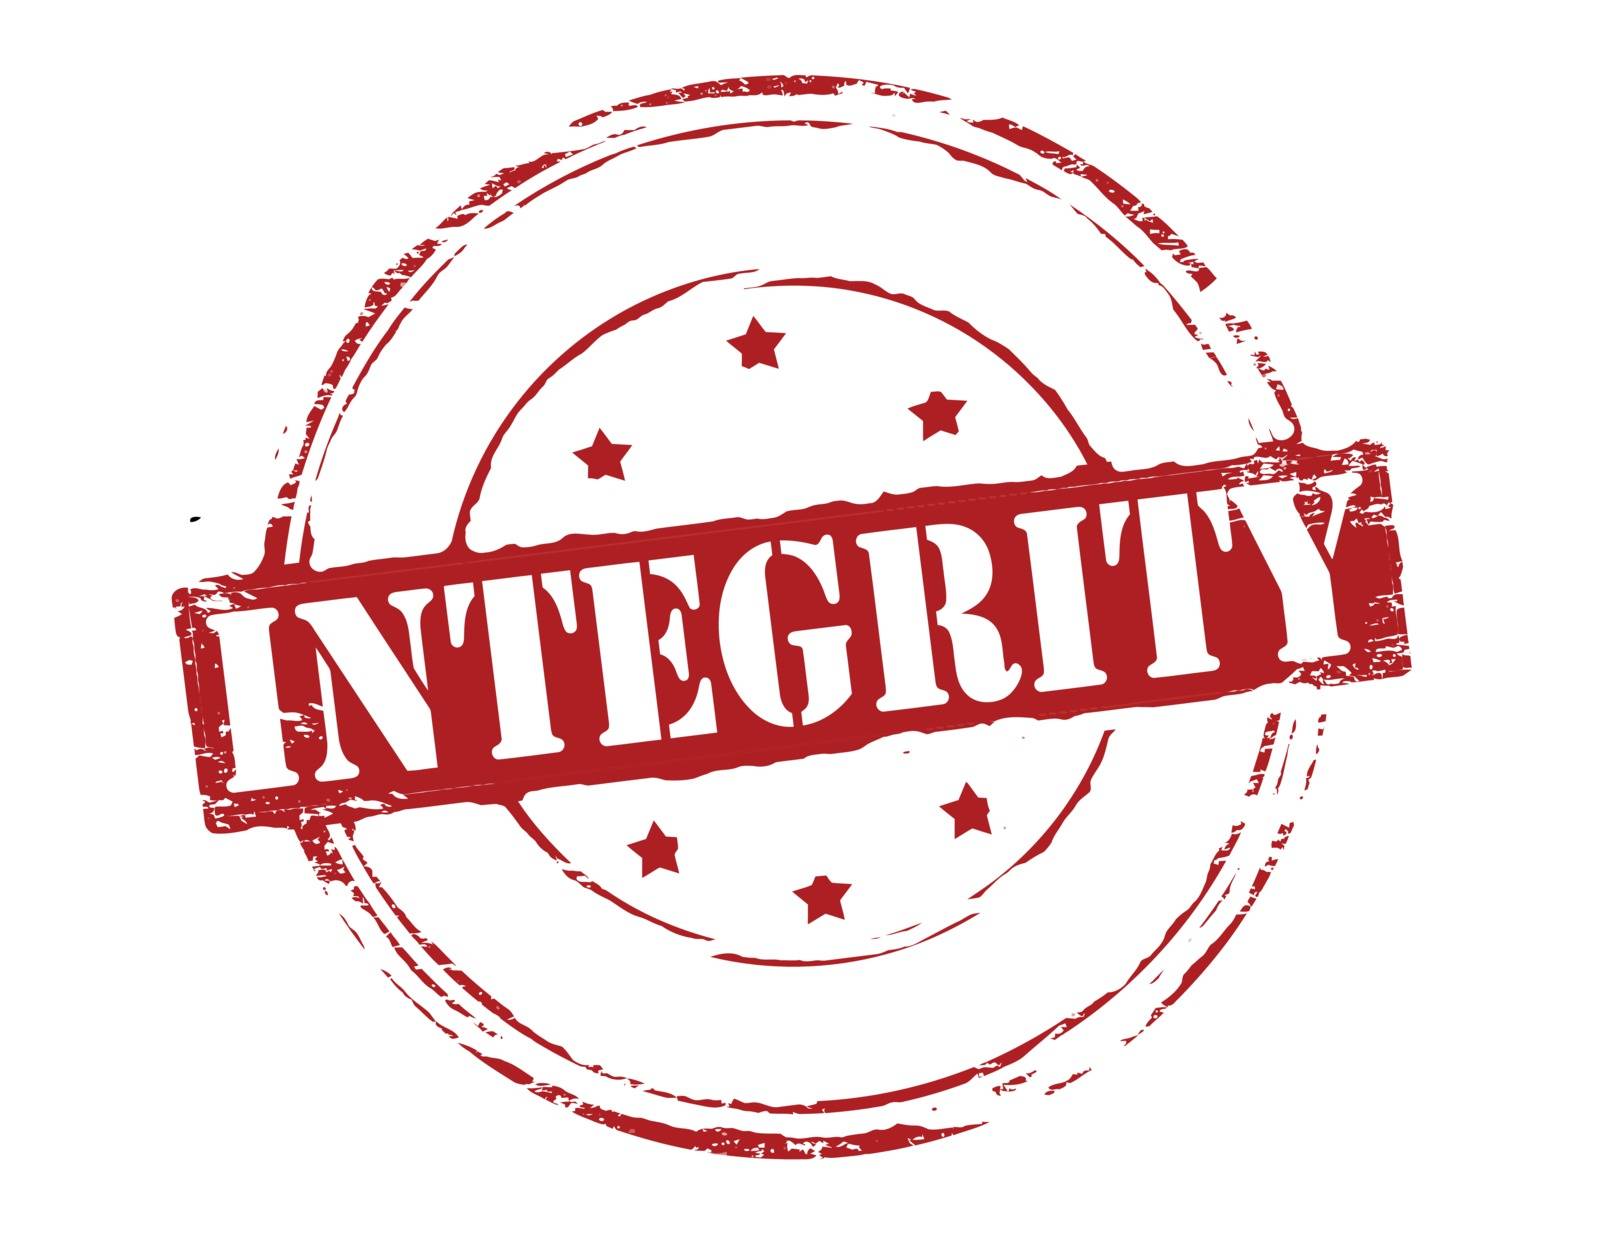 Integrity by carmenbobo